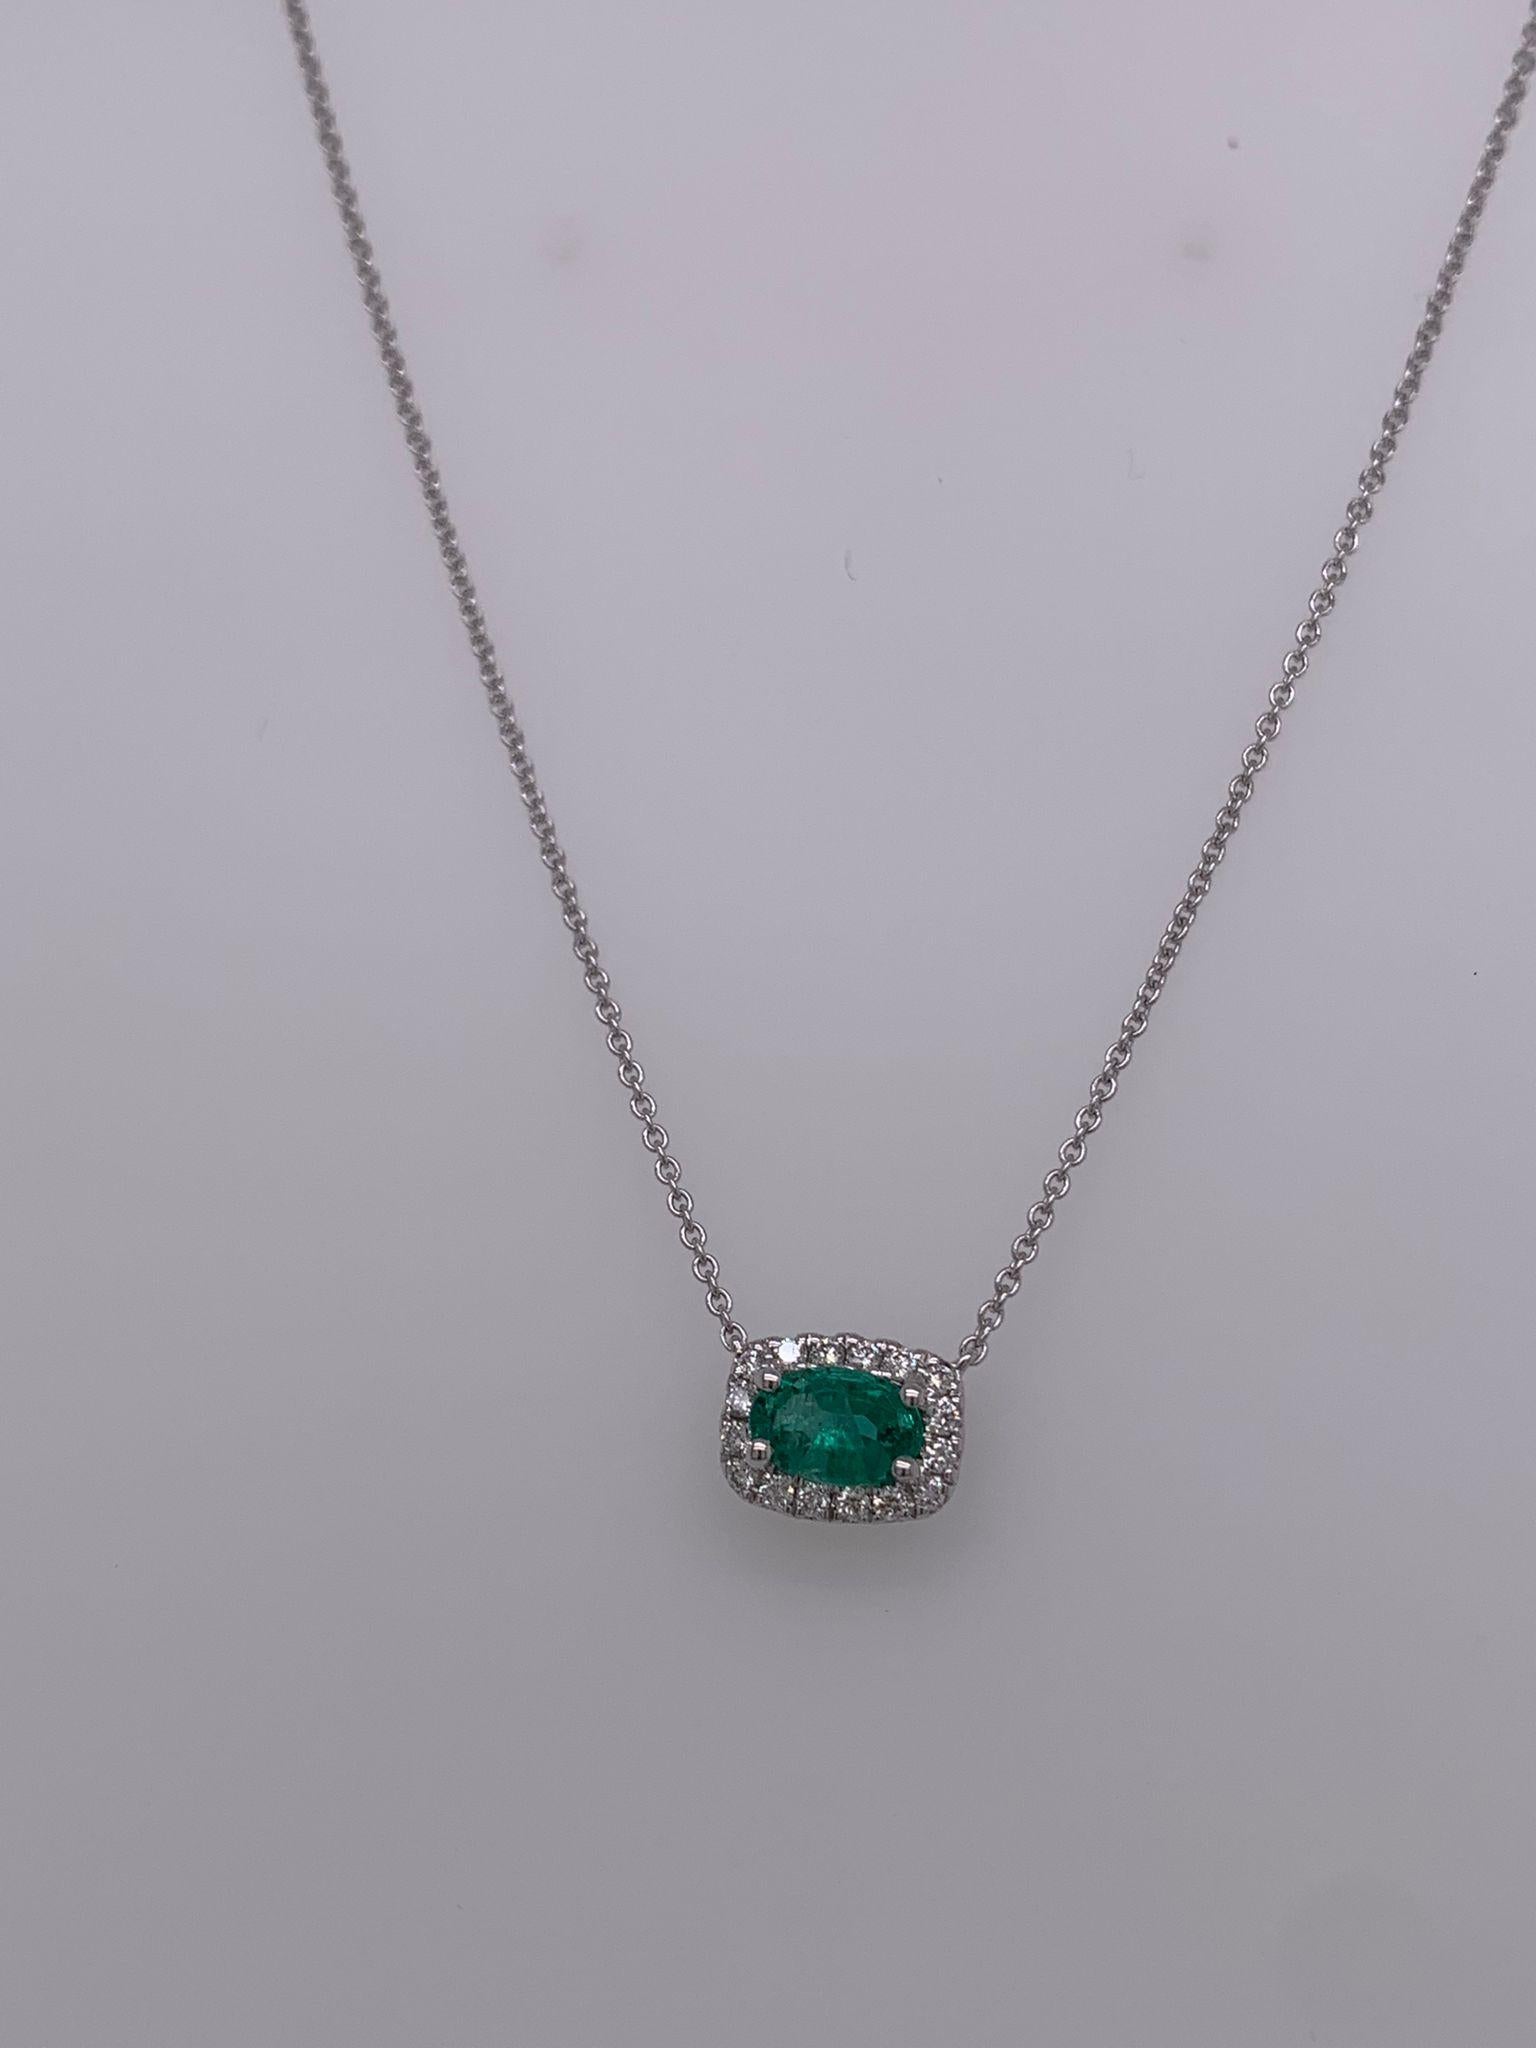 Ovaler Smaragd mit 0,44 Karat
Messung (5,5x3,5) mm
Diamanten mit einem Gewicht von 0,10 Karat
Fassung aus 18 Karat Weißgold 
